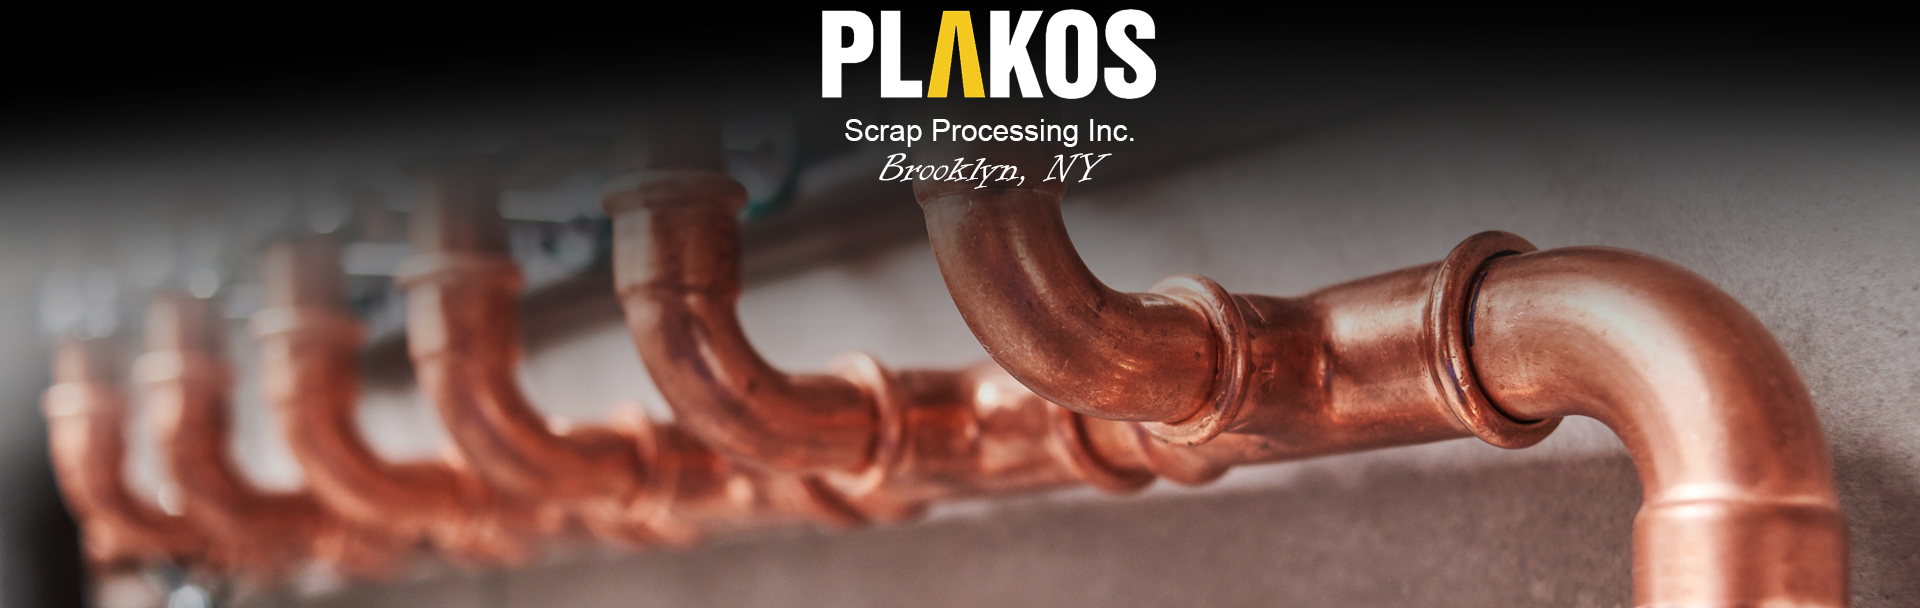 Plakos Scrap Processing Inc. Junk Copper image